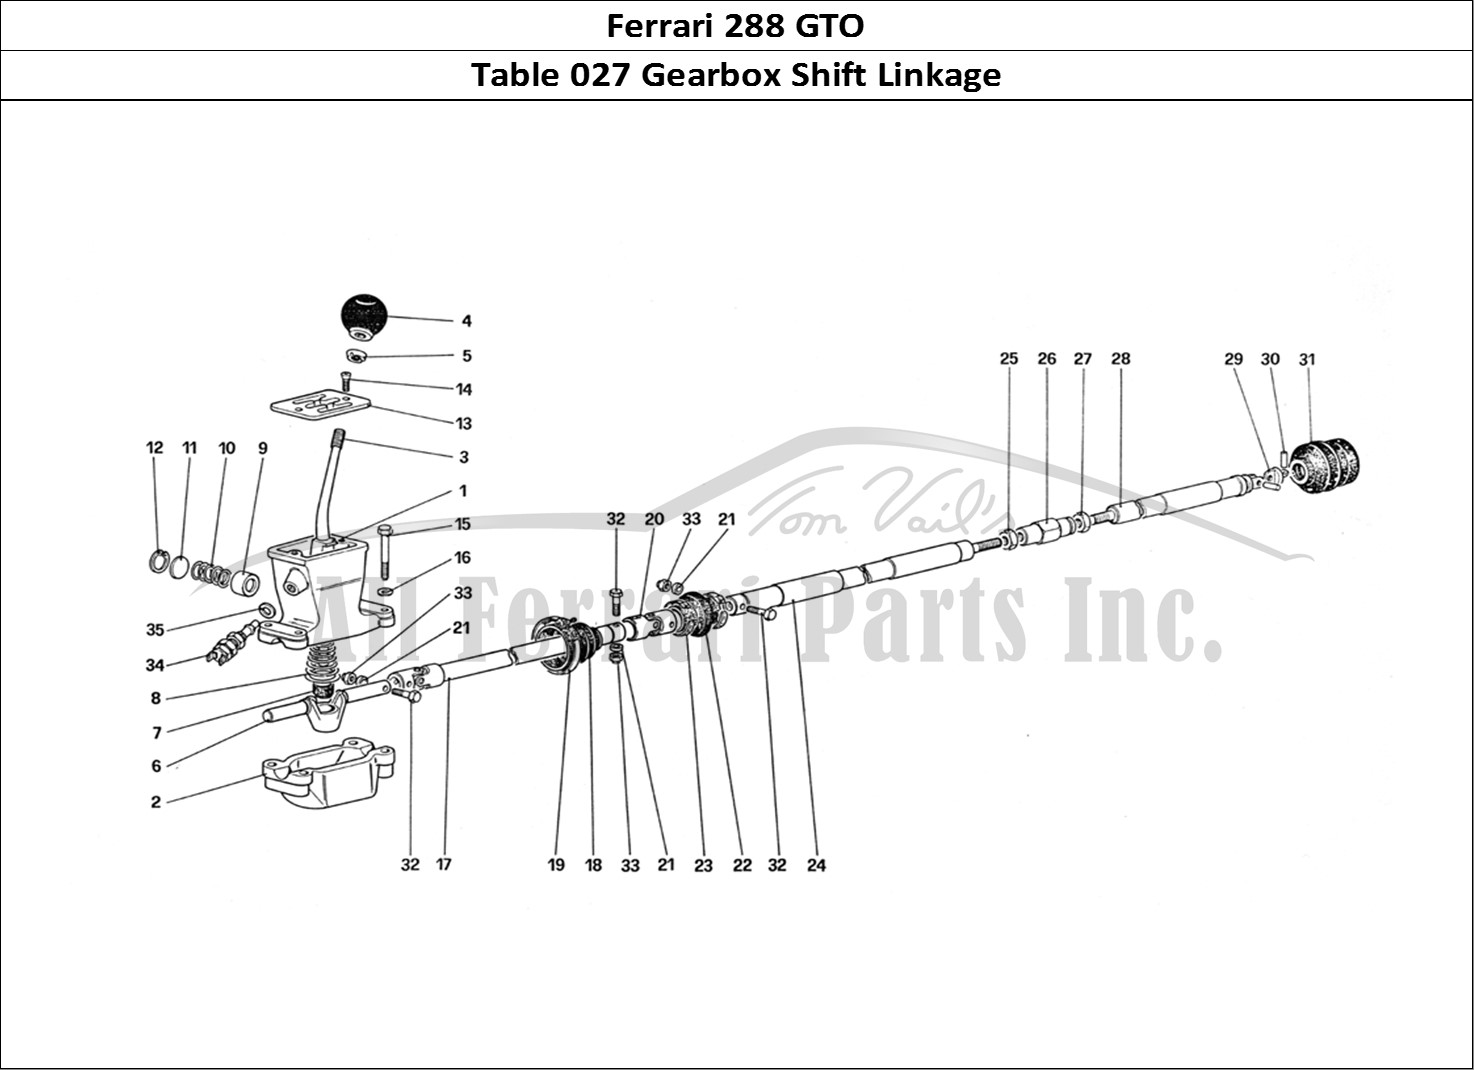 Ferrari Parts Ferrari 288 GTO Page 027 Outside Gearbox Controls